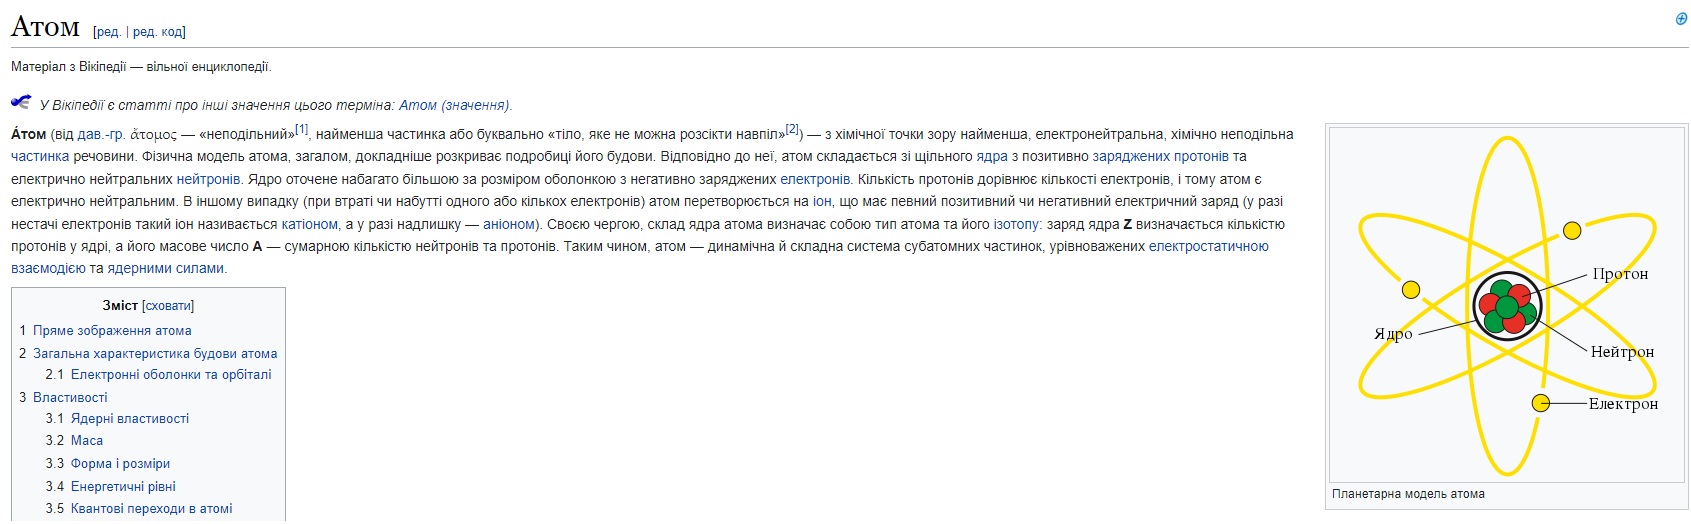 Первая статья в украинской Википедии - Атом